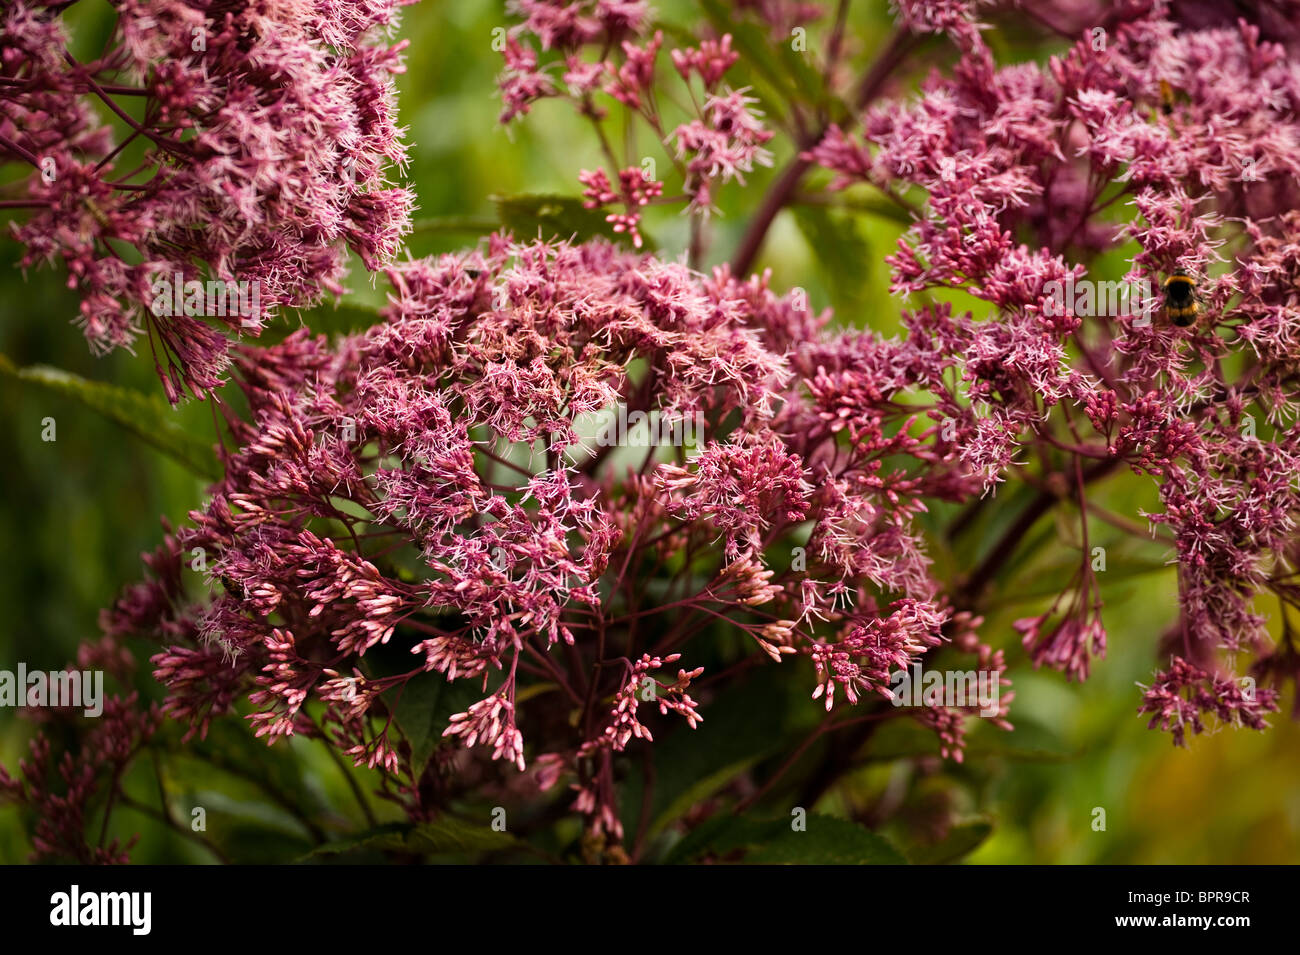 Eupatorium purpureum subsp maculatum 'Atropurpureum', Joe Pye Weed, in flower in August Stock Photo